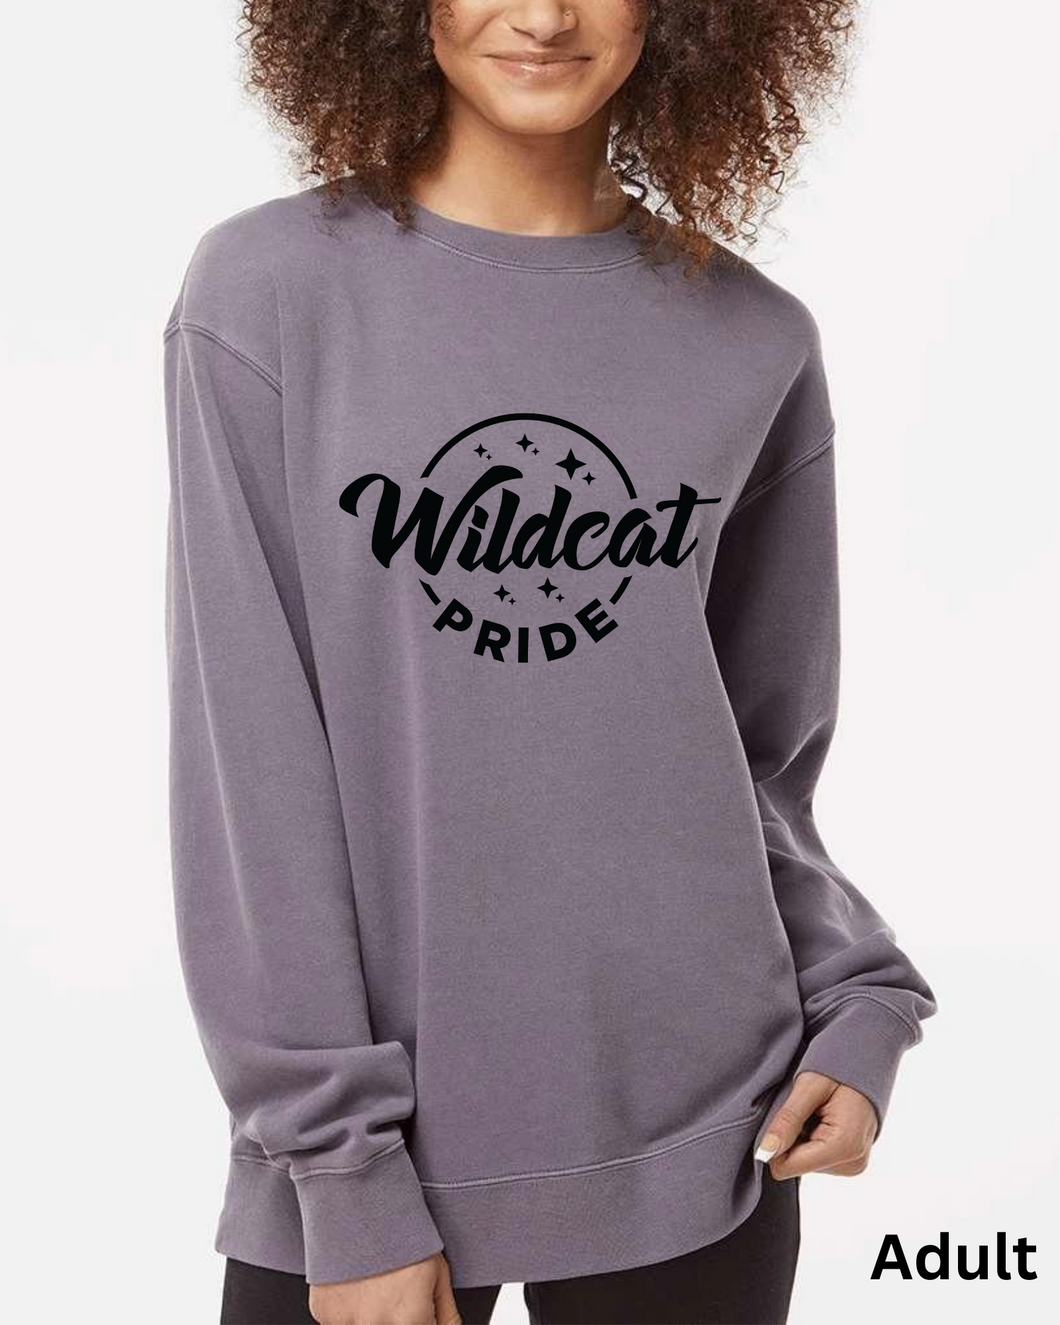 wildcat pride